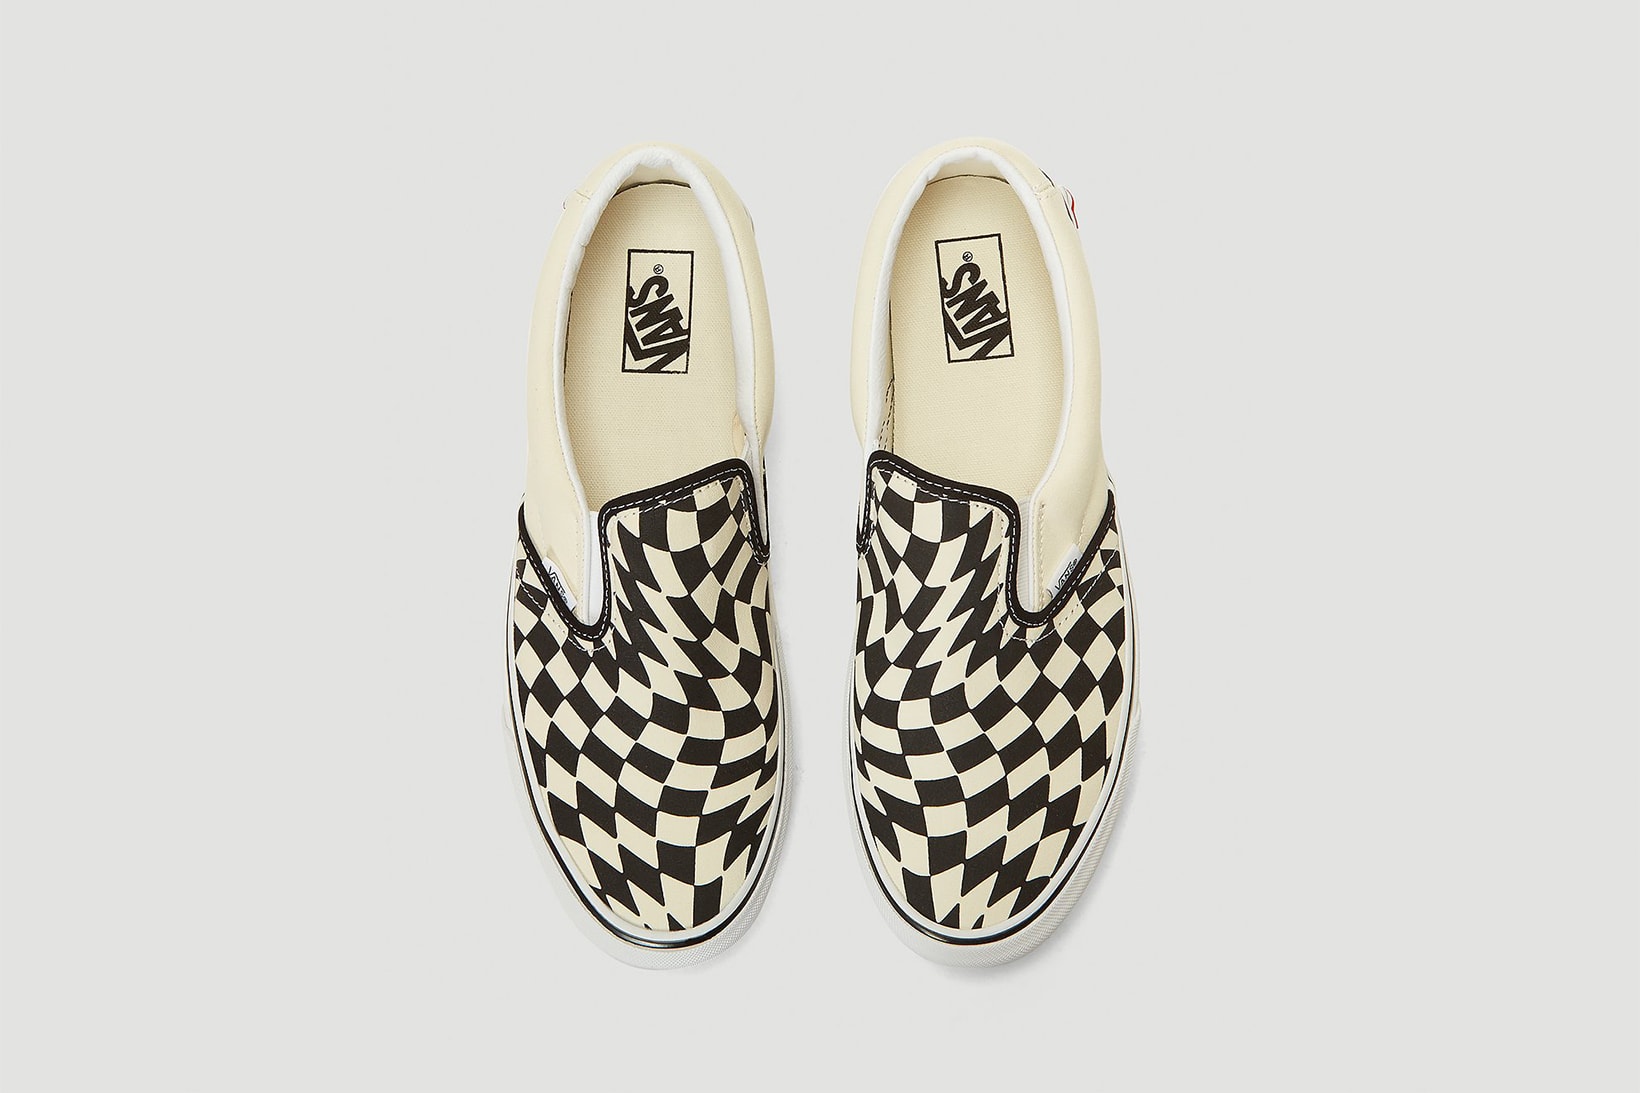 vans checkerboard slip on twist sneakers white cream black colorway sneakerhead footwear shoes